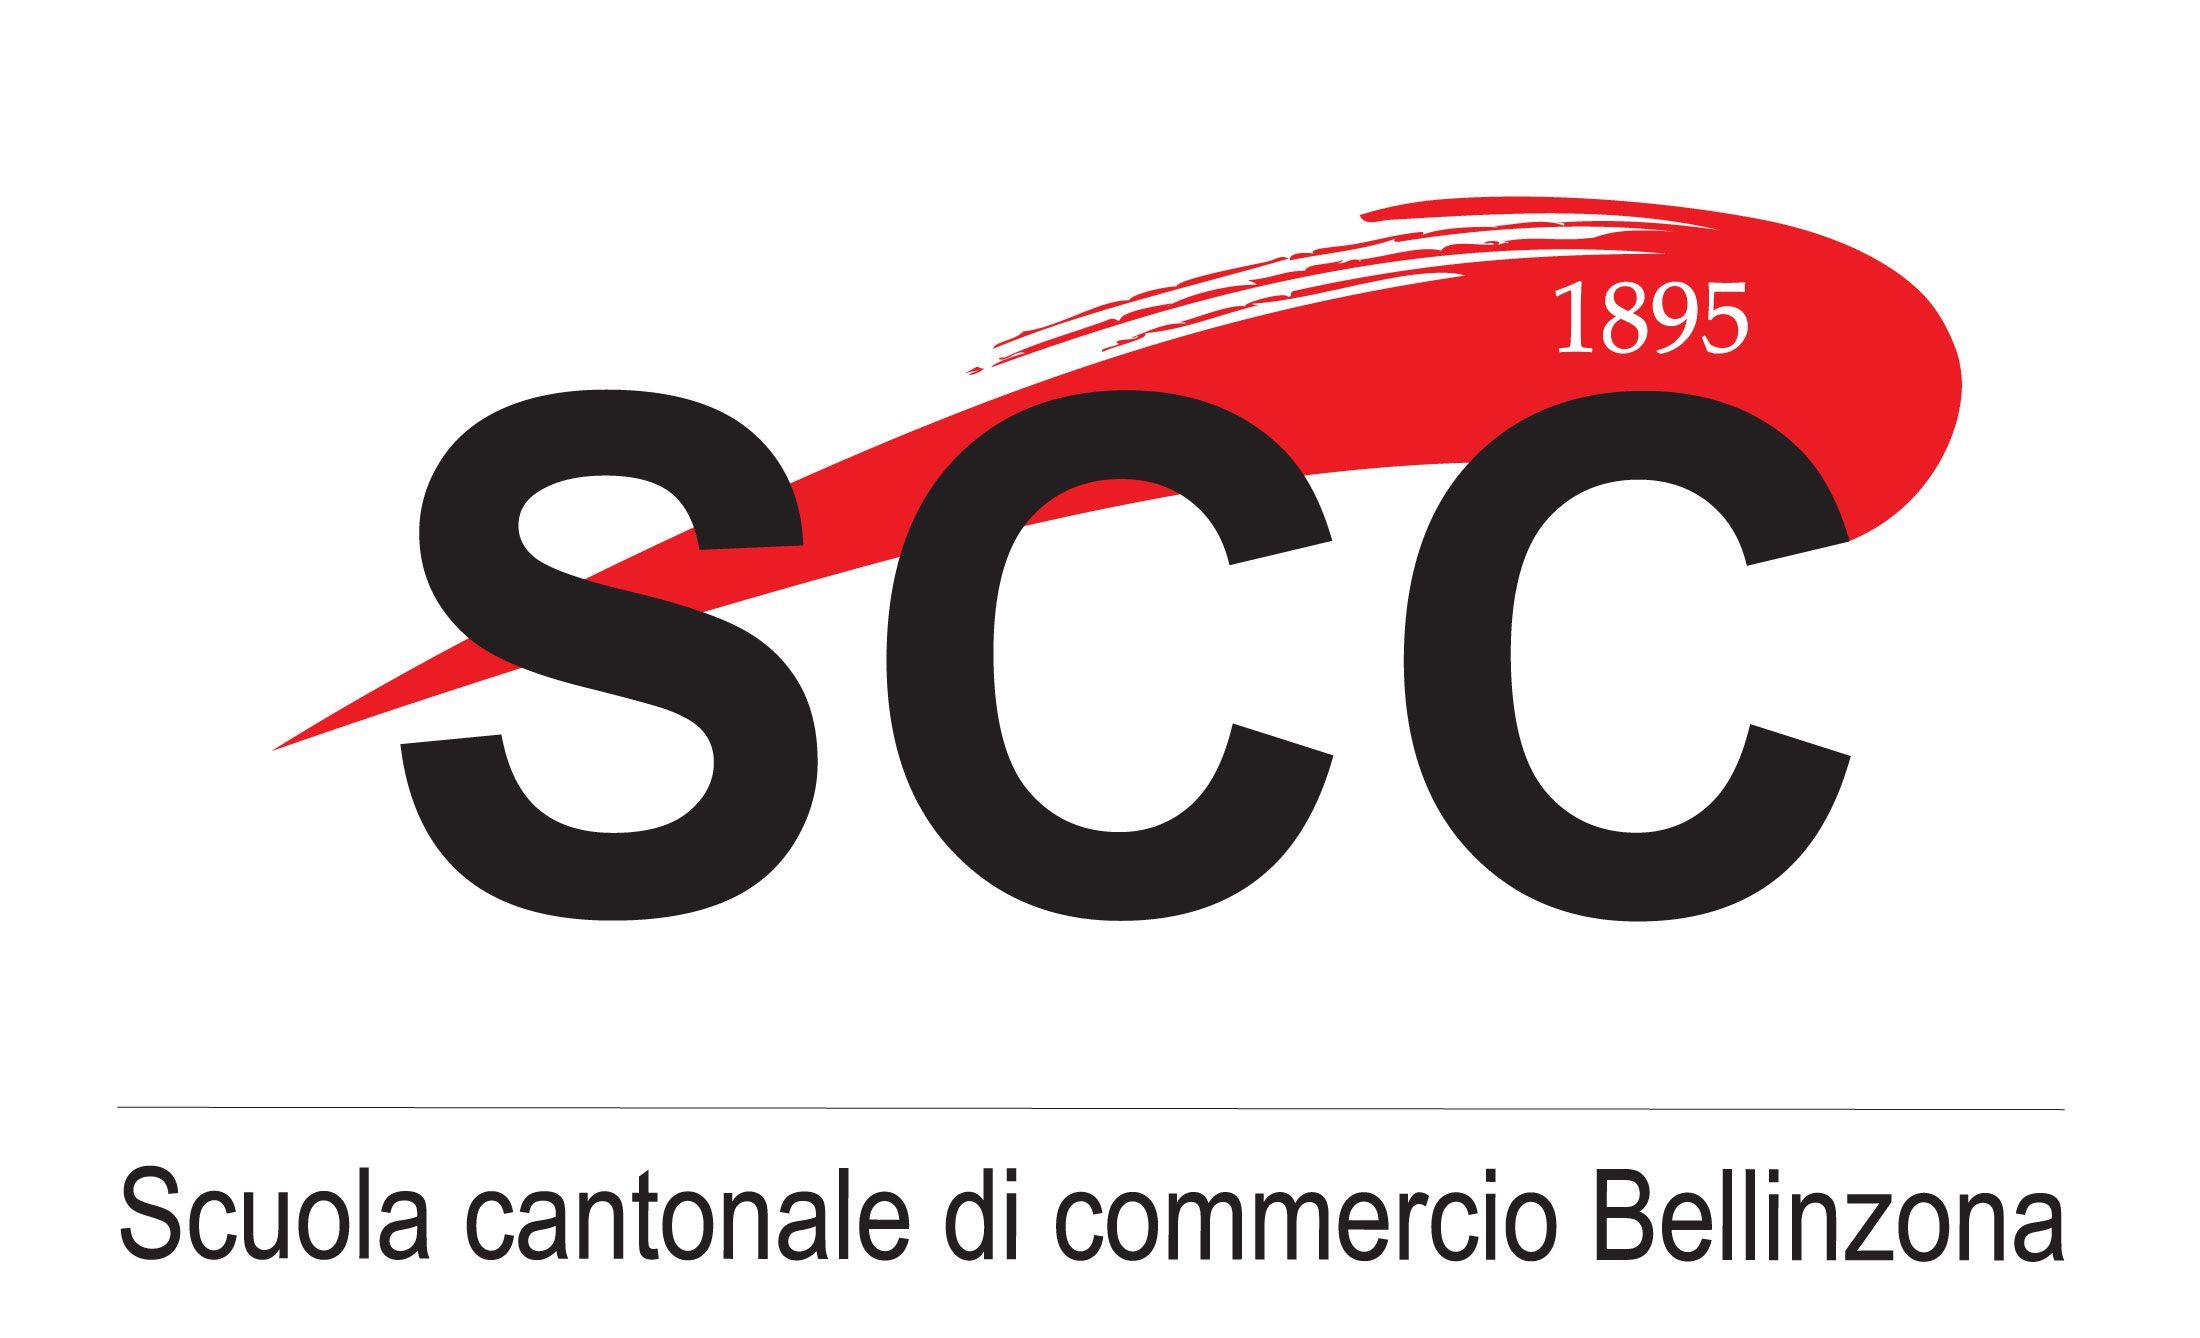 SCC Logo - SCC: Logo SCC